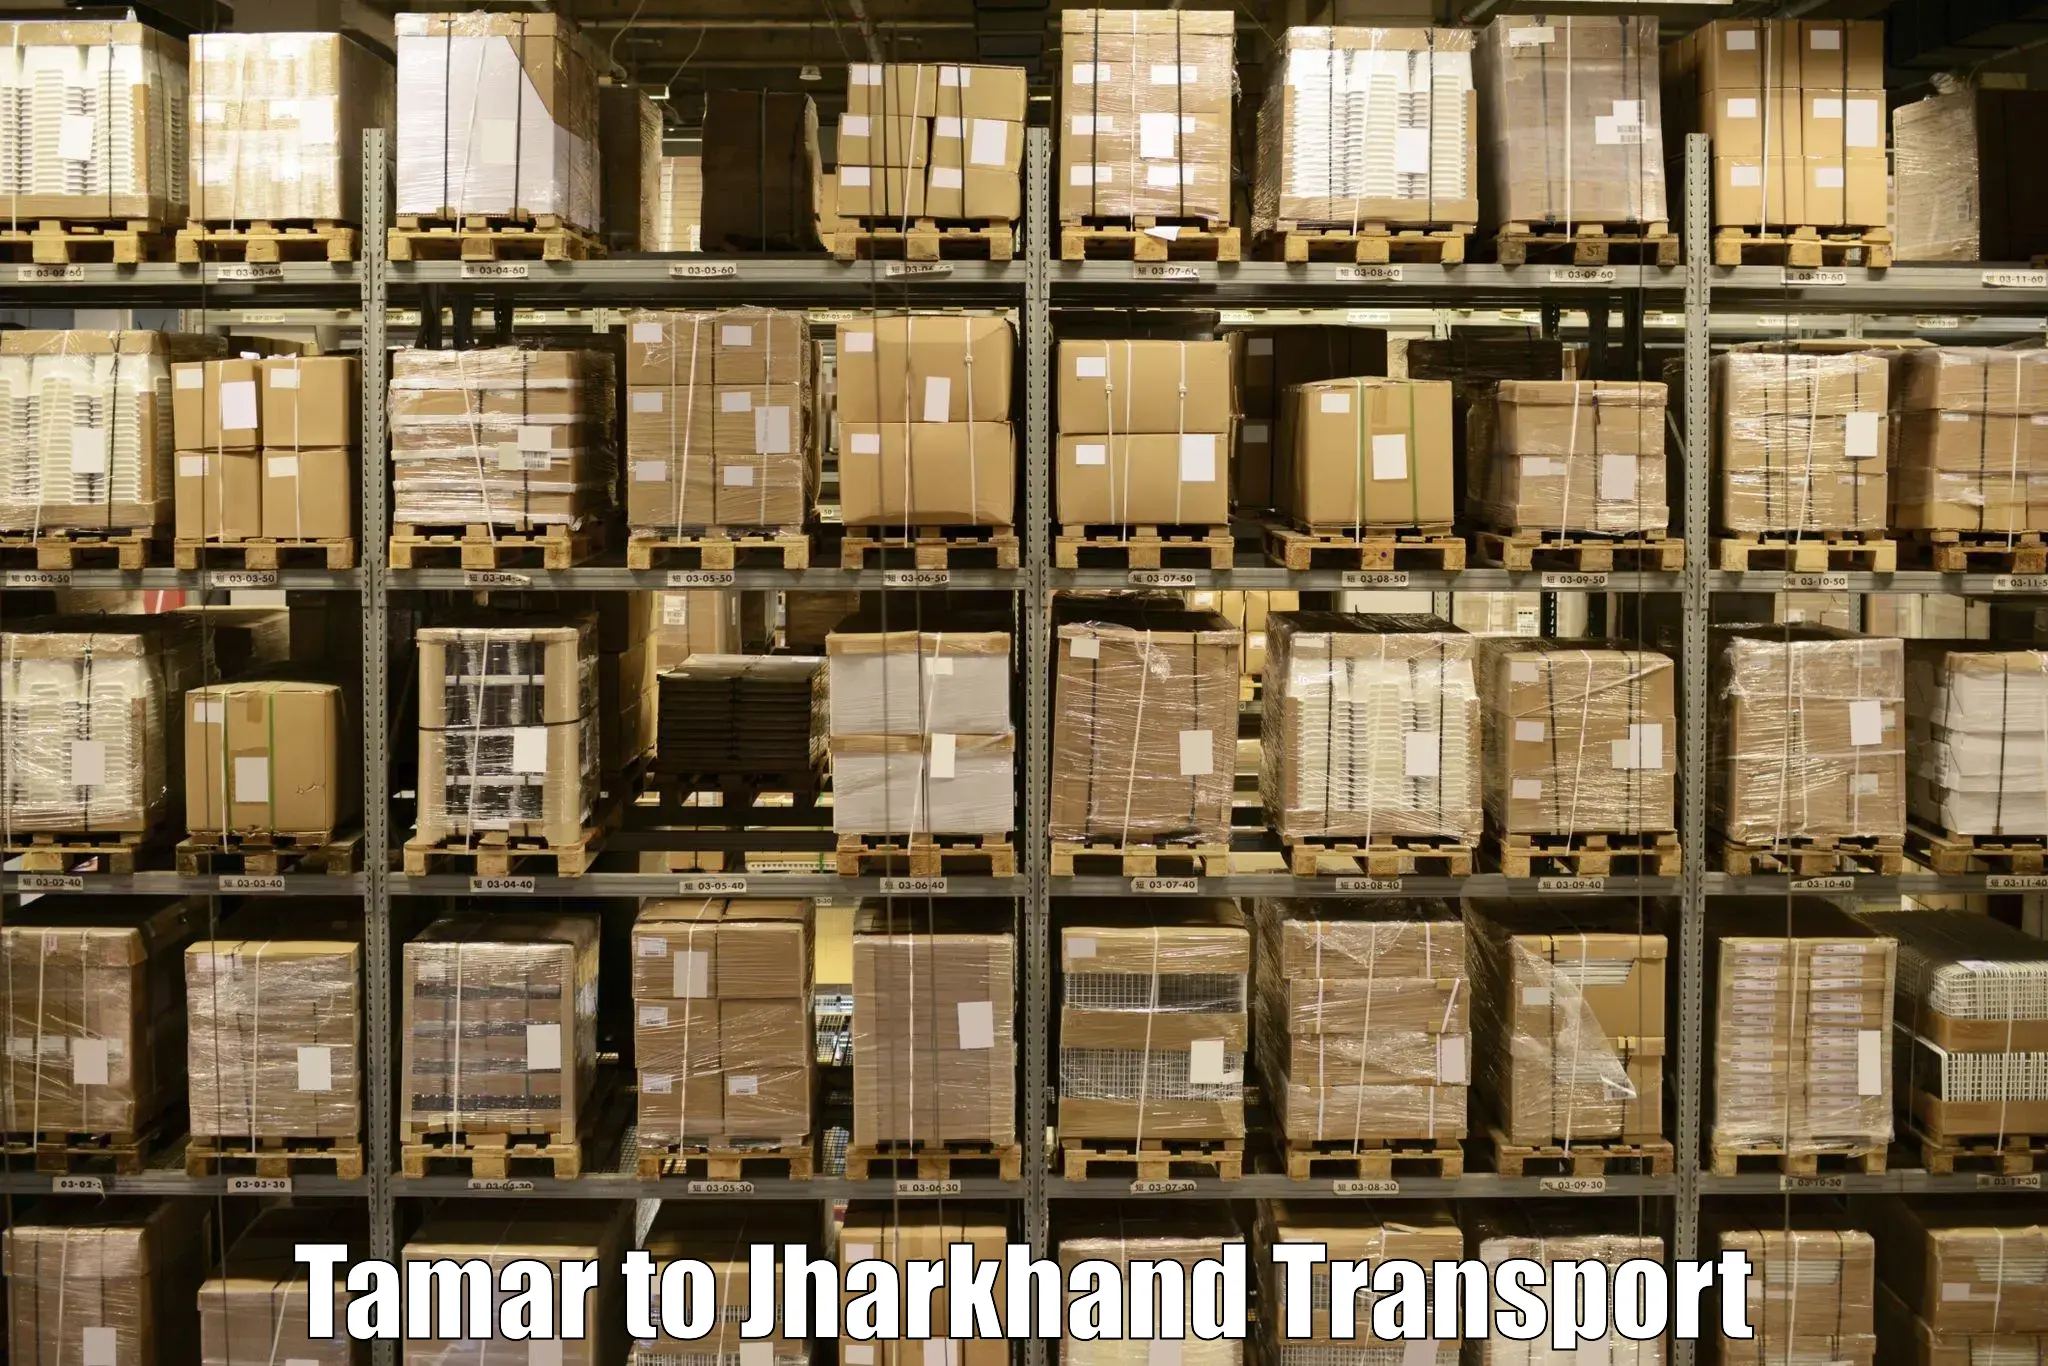 Air freight transport services Tamar to Nagar Untari